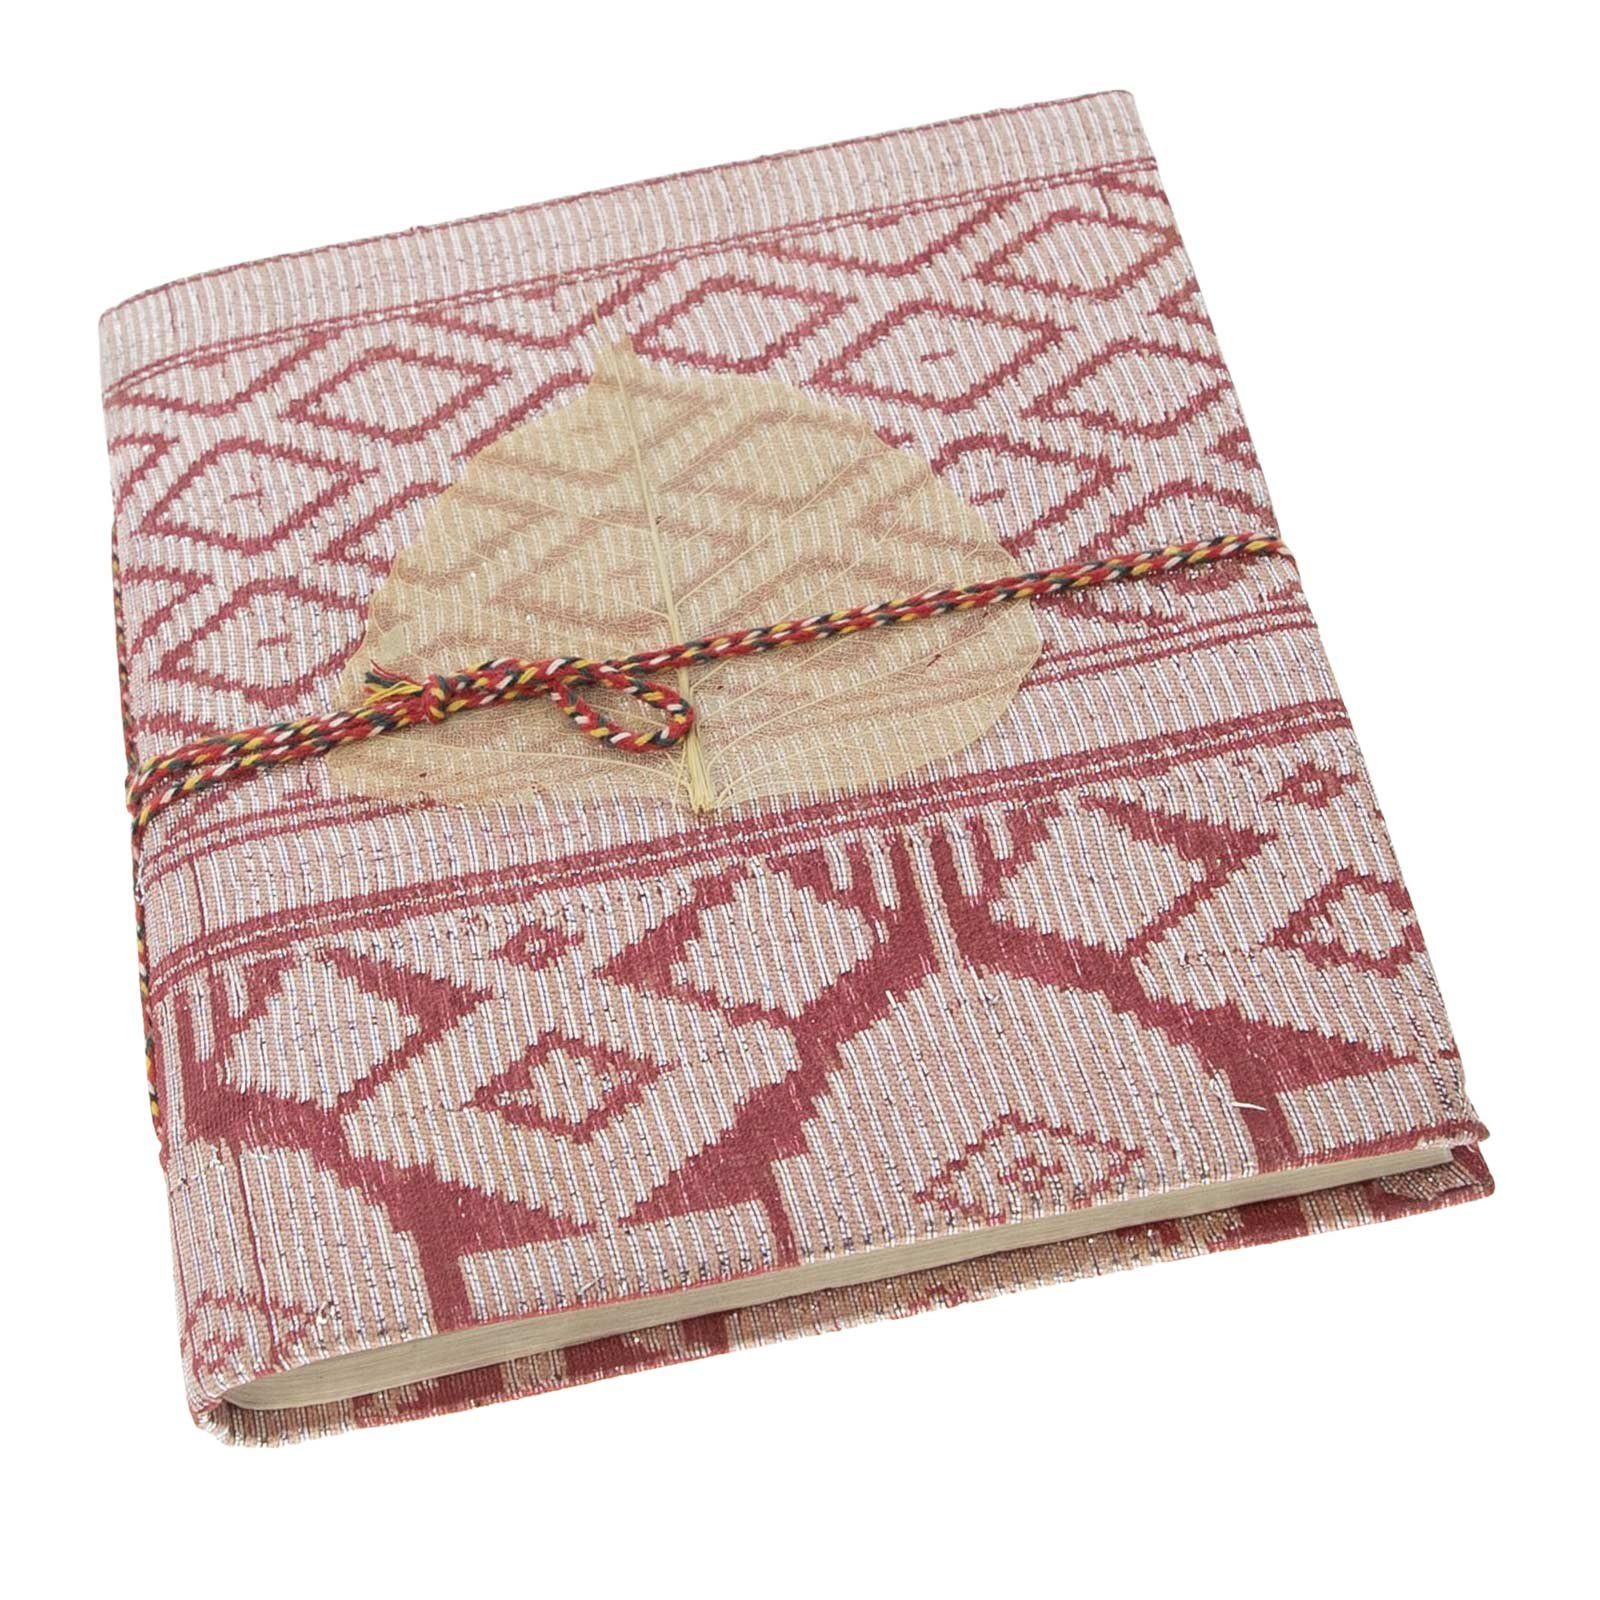 KUNST UND MAGIE Sari handgefertigt Poesie 12,5x17cm Baumwollpapier-Notizbuch Tagebuch Tagebuch